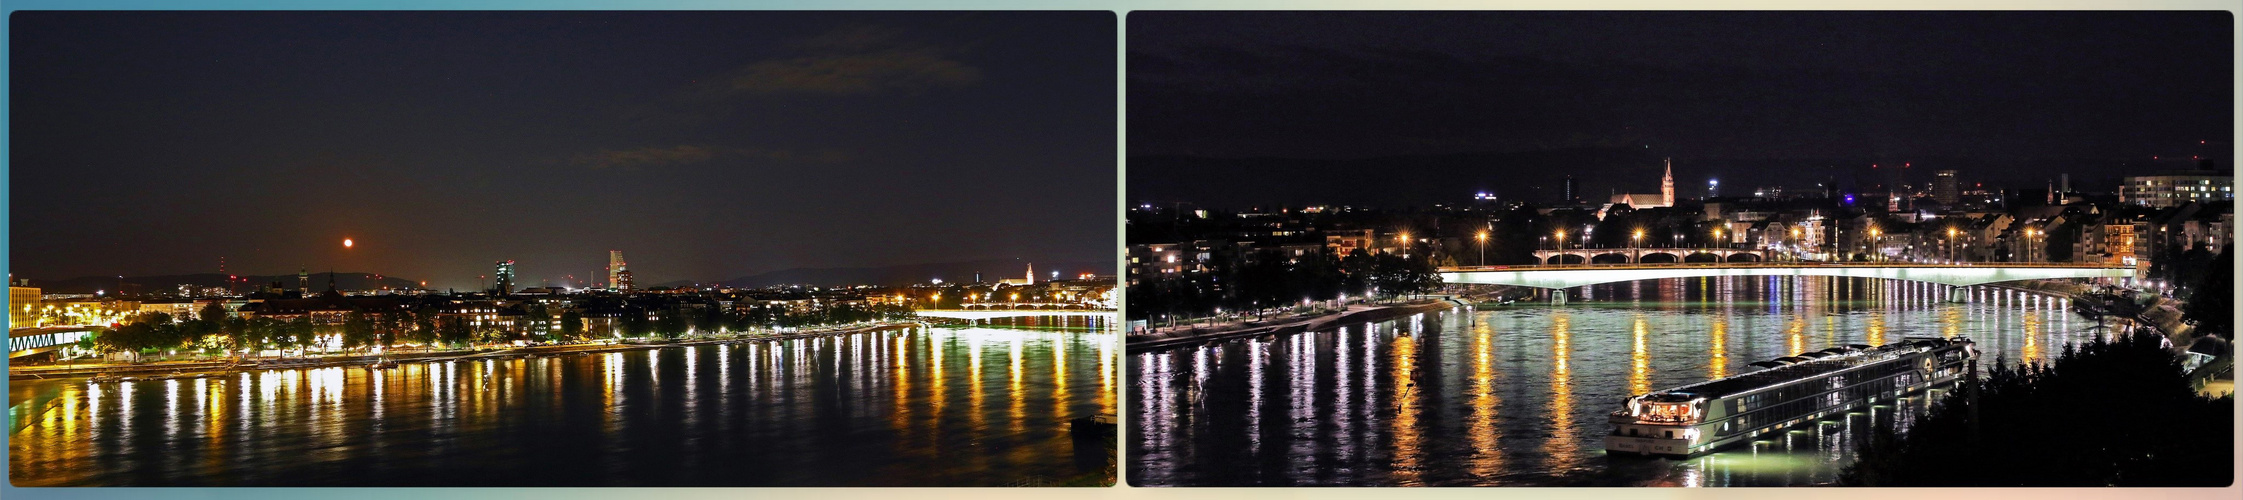 Lichterspiegelung im Rhein